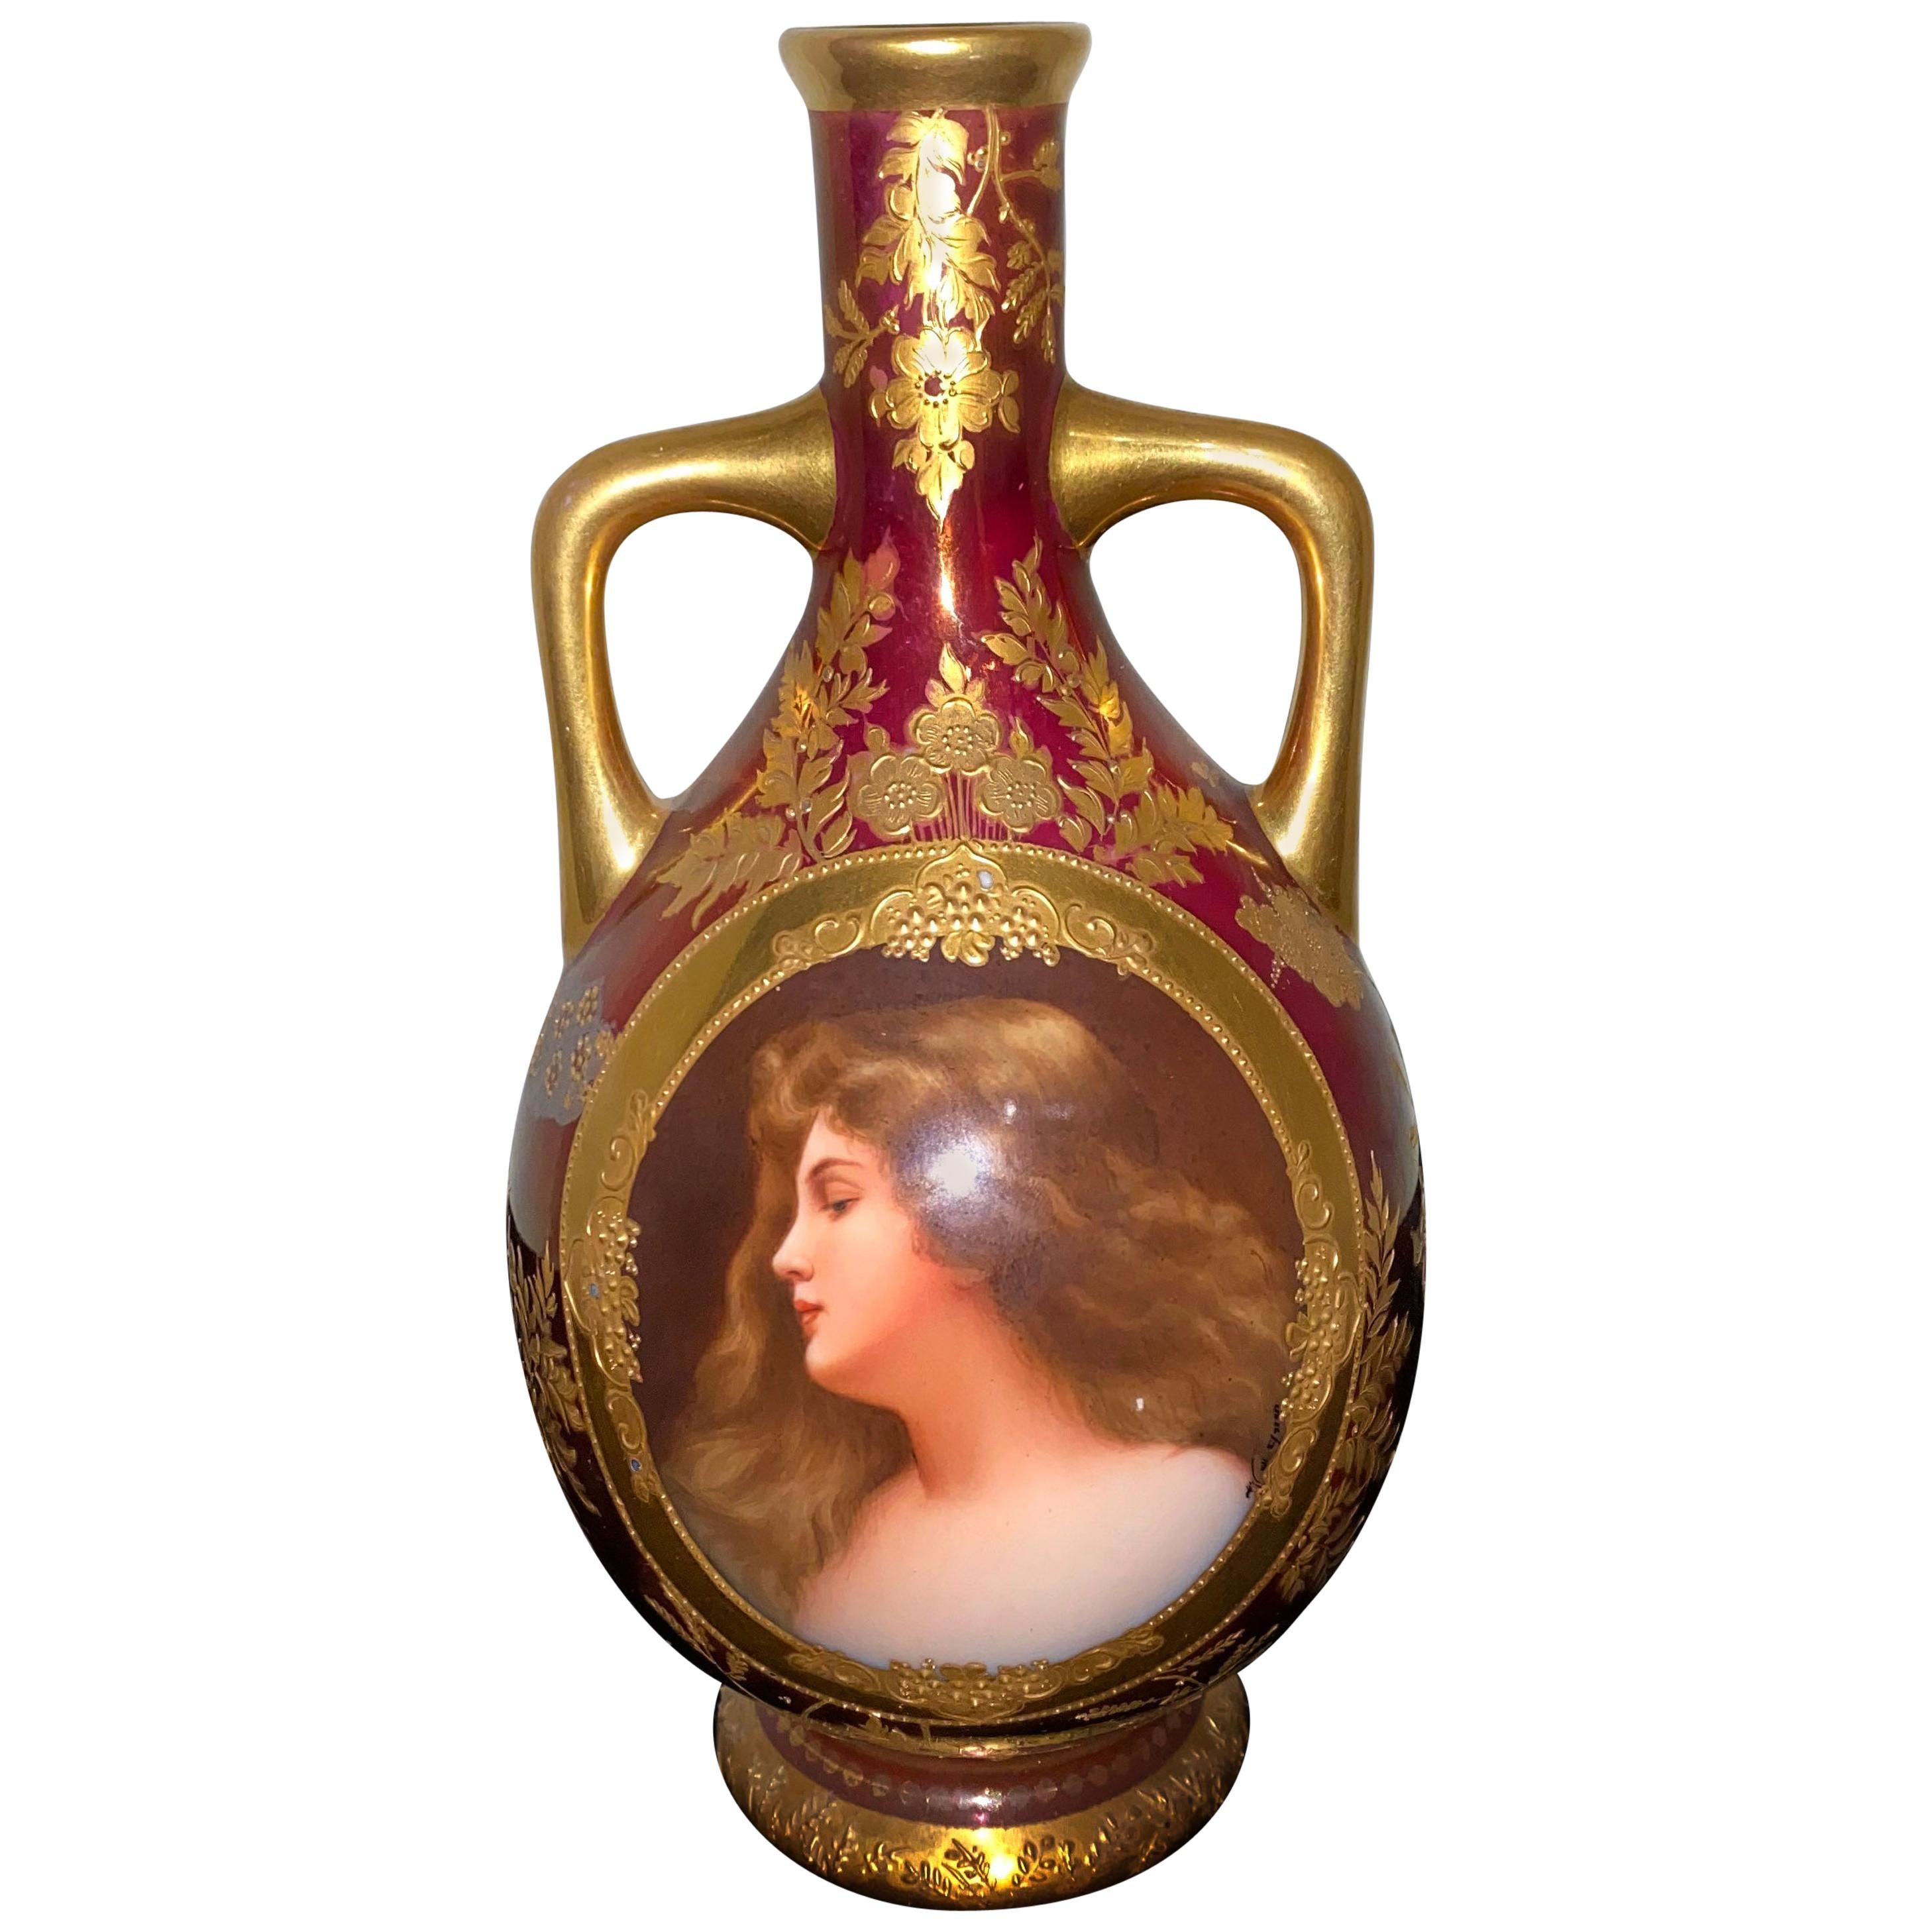 Beau vase en porcelaine de style viennois de la fin du 19ème siècle représentant Vénus